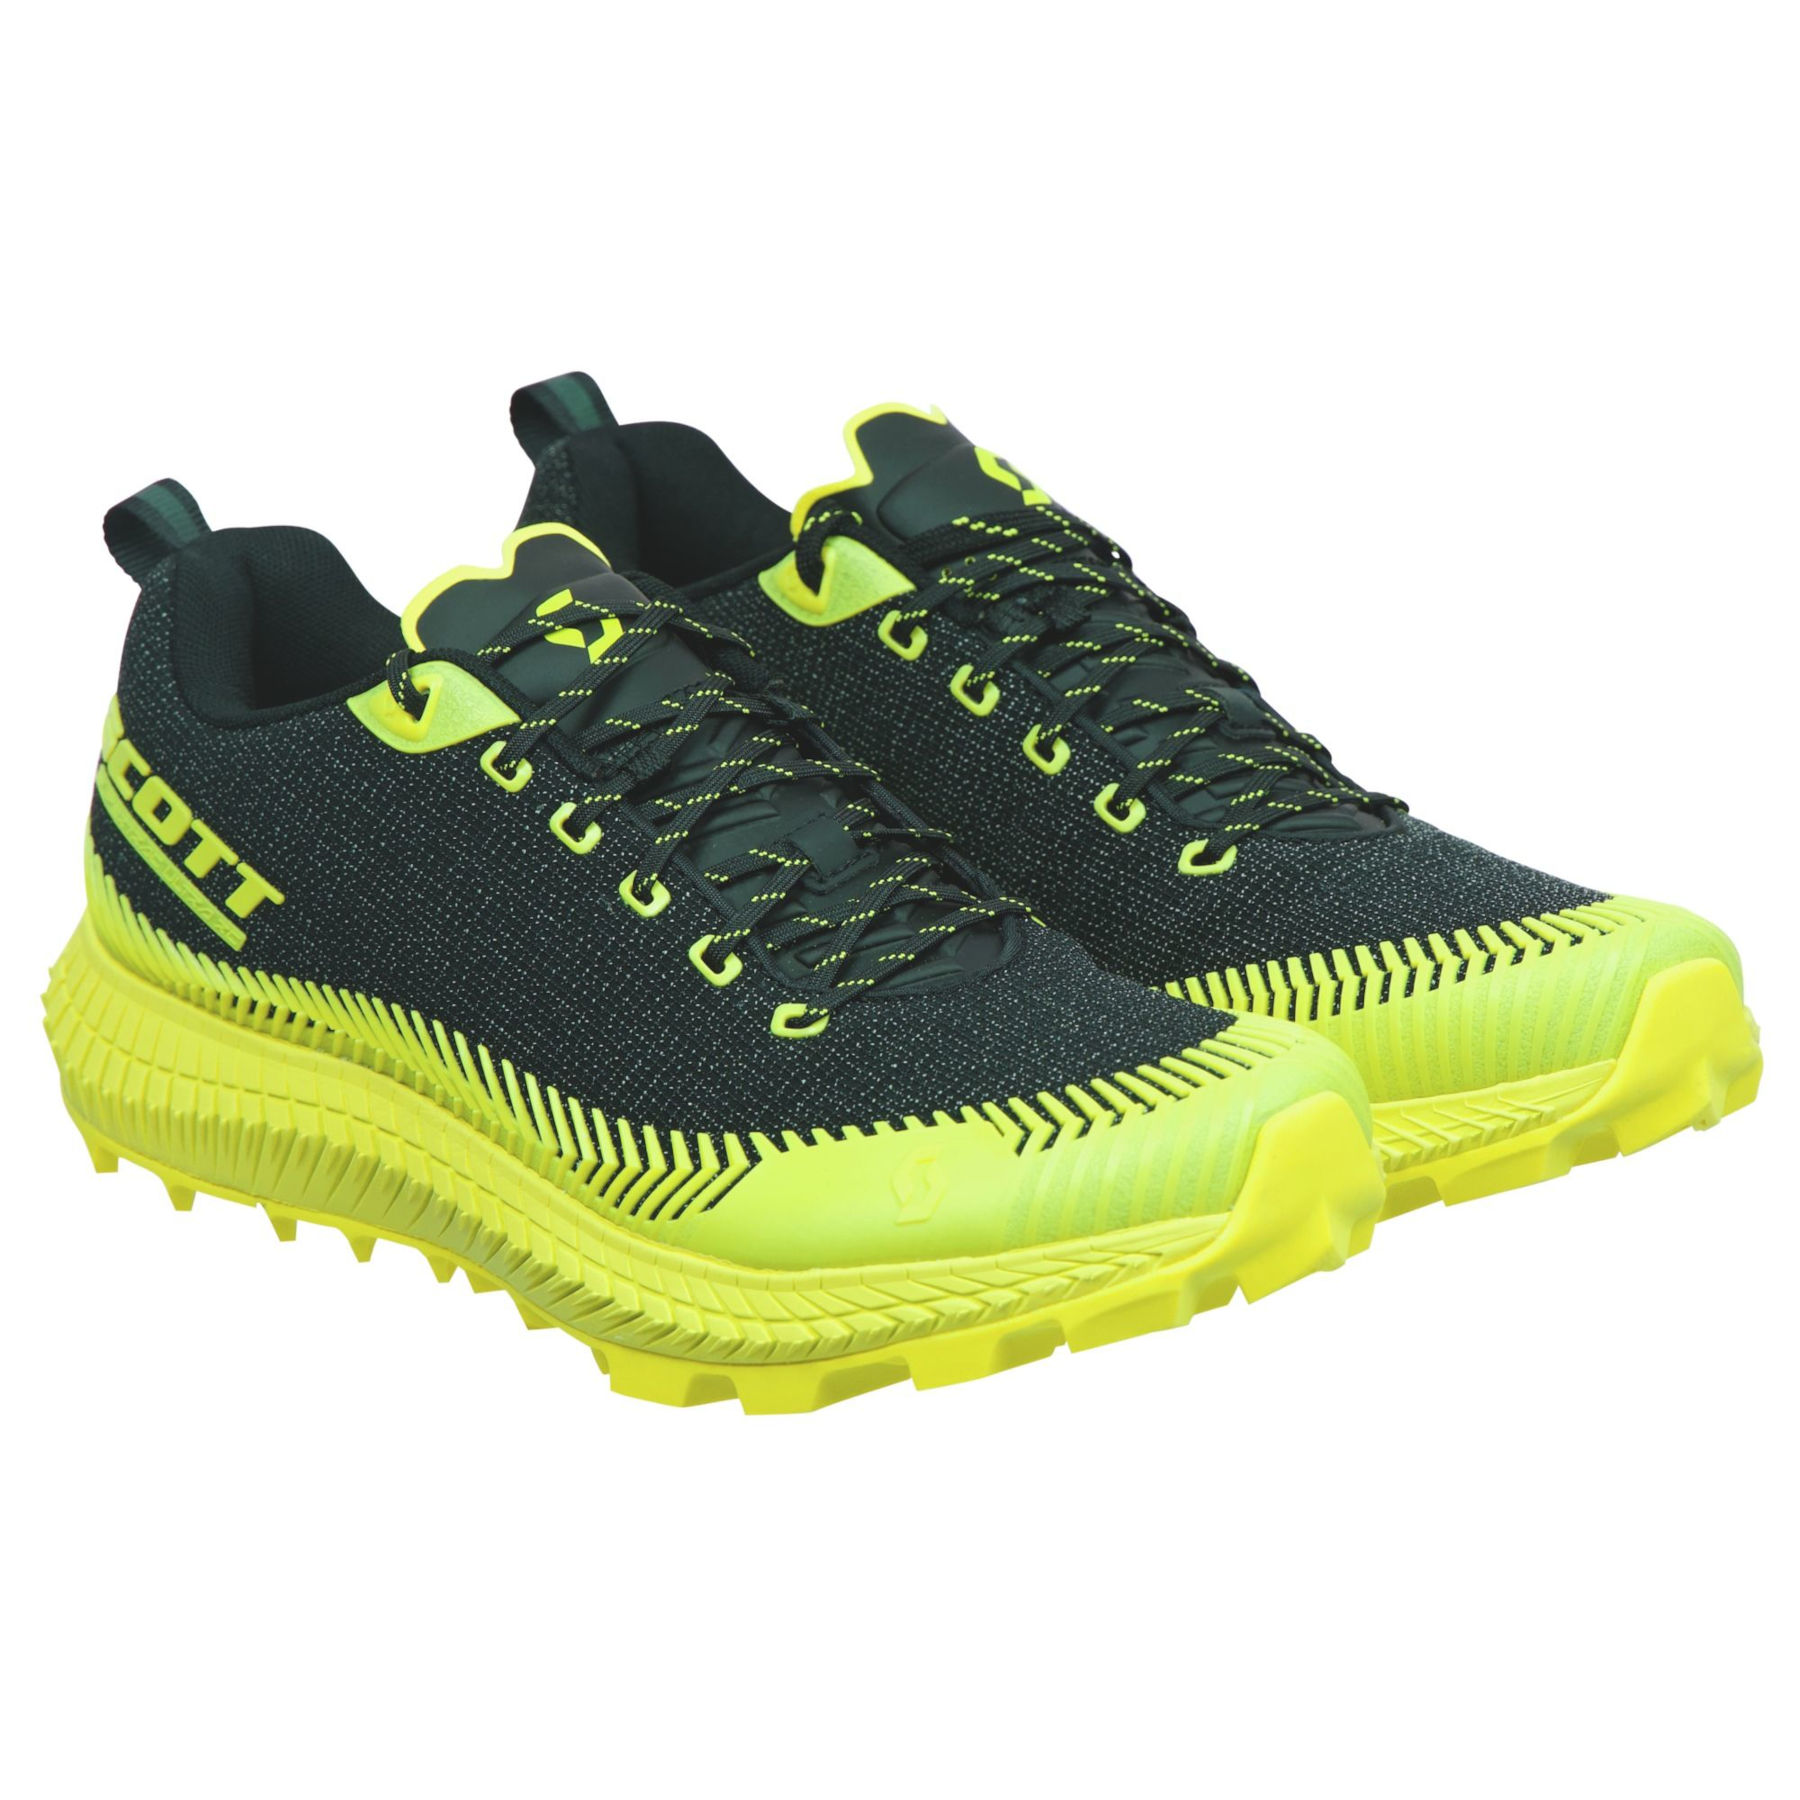 Bild von SCOTT Supertrac Ultra RC Shoe Laufschuh - schwarz/gelb